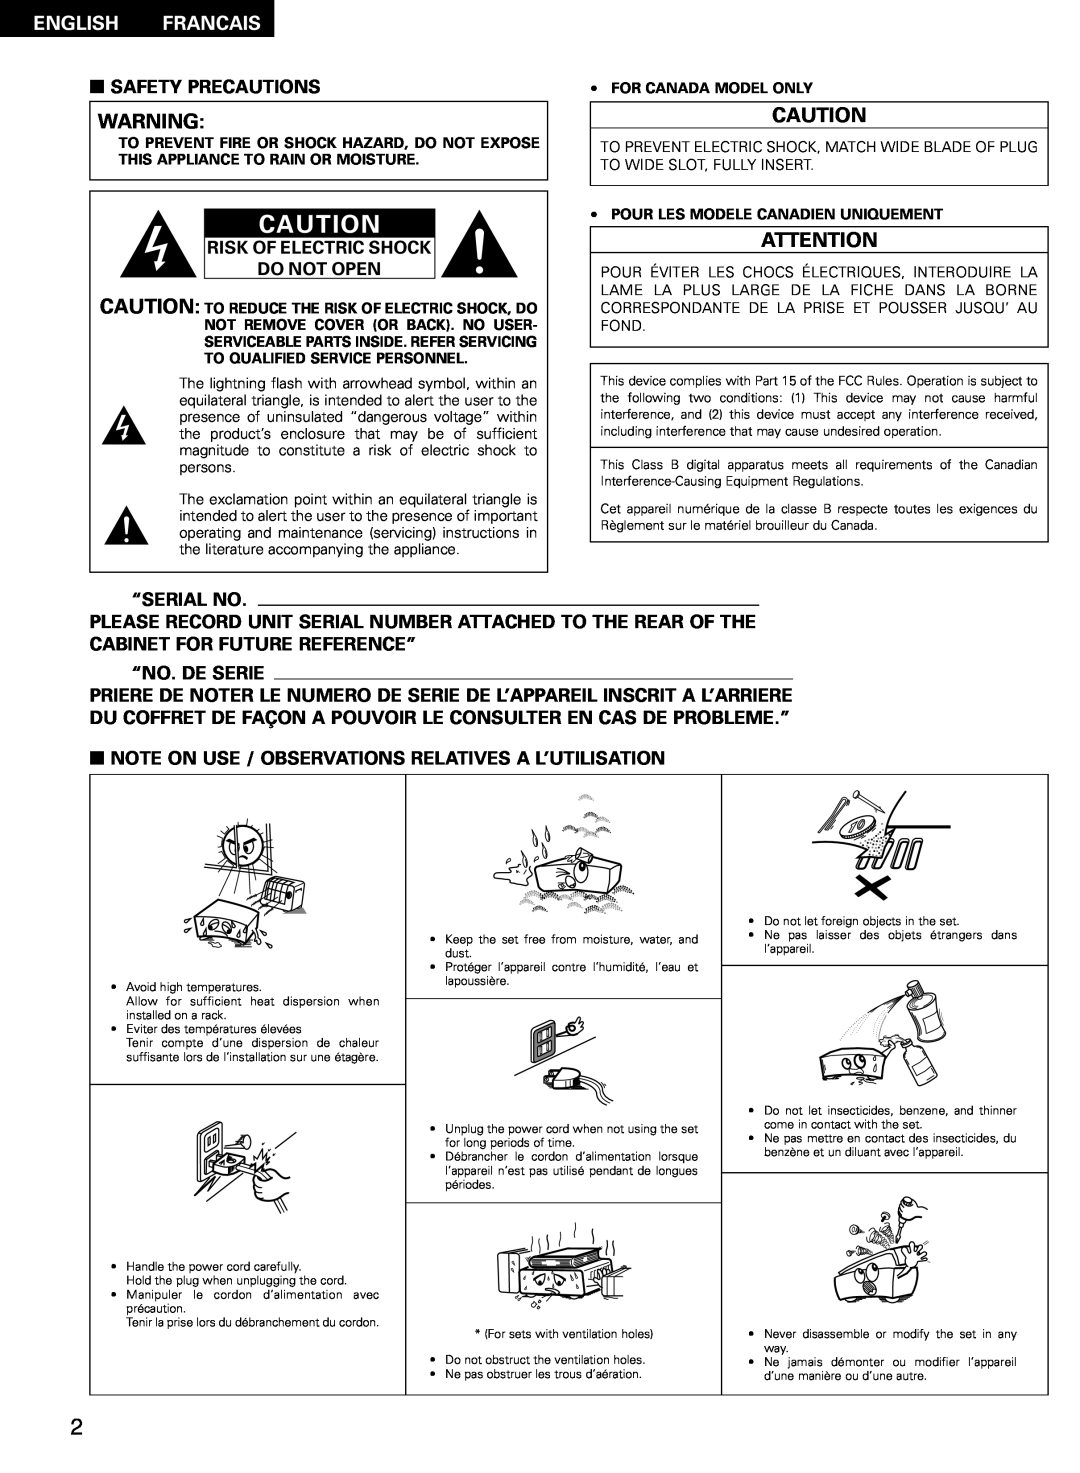 Denon AVR-2802/982 English Francais, 2SAFETY PRECAUTIONS, Risk Of Electric Shock Do Not Open, “Serial No, “No. De Serie 